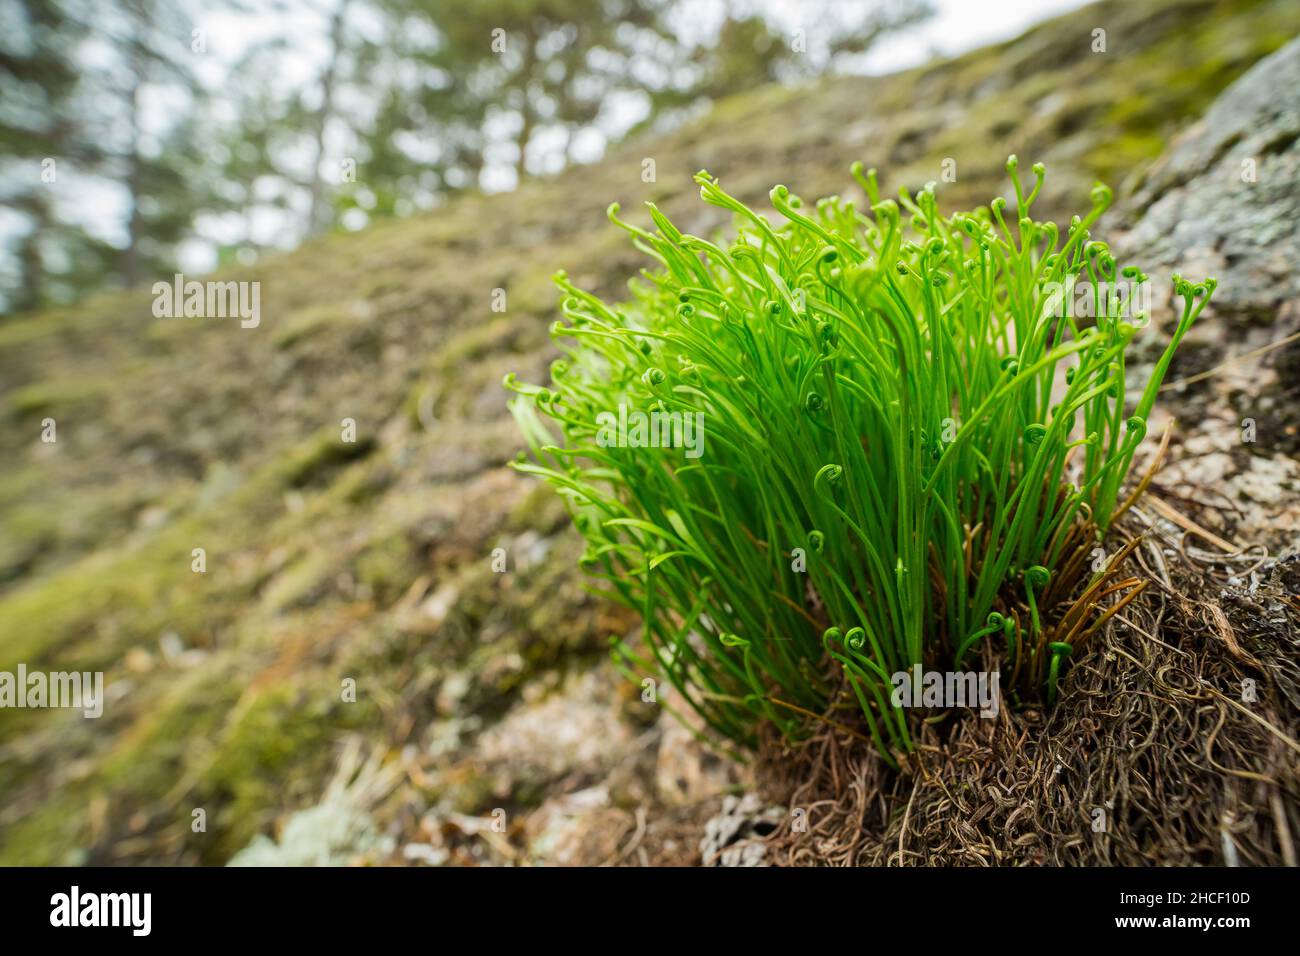 Forked spleenwort fern (Asplenium septentrionale) Stock Photo